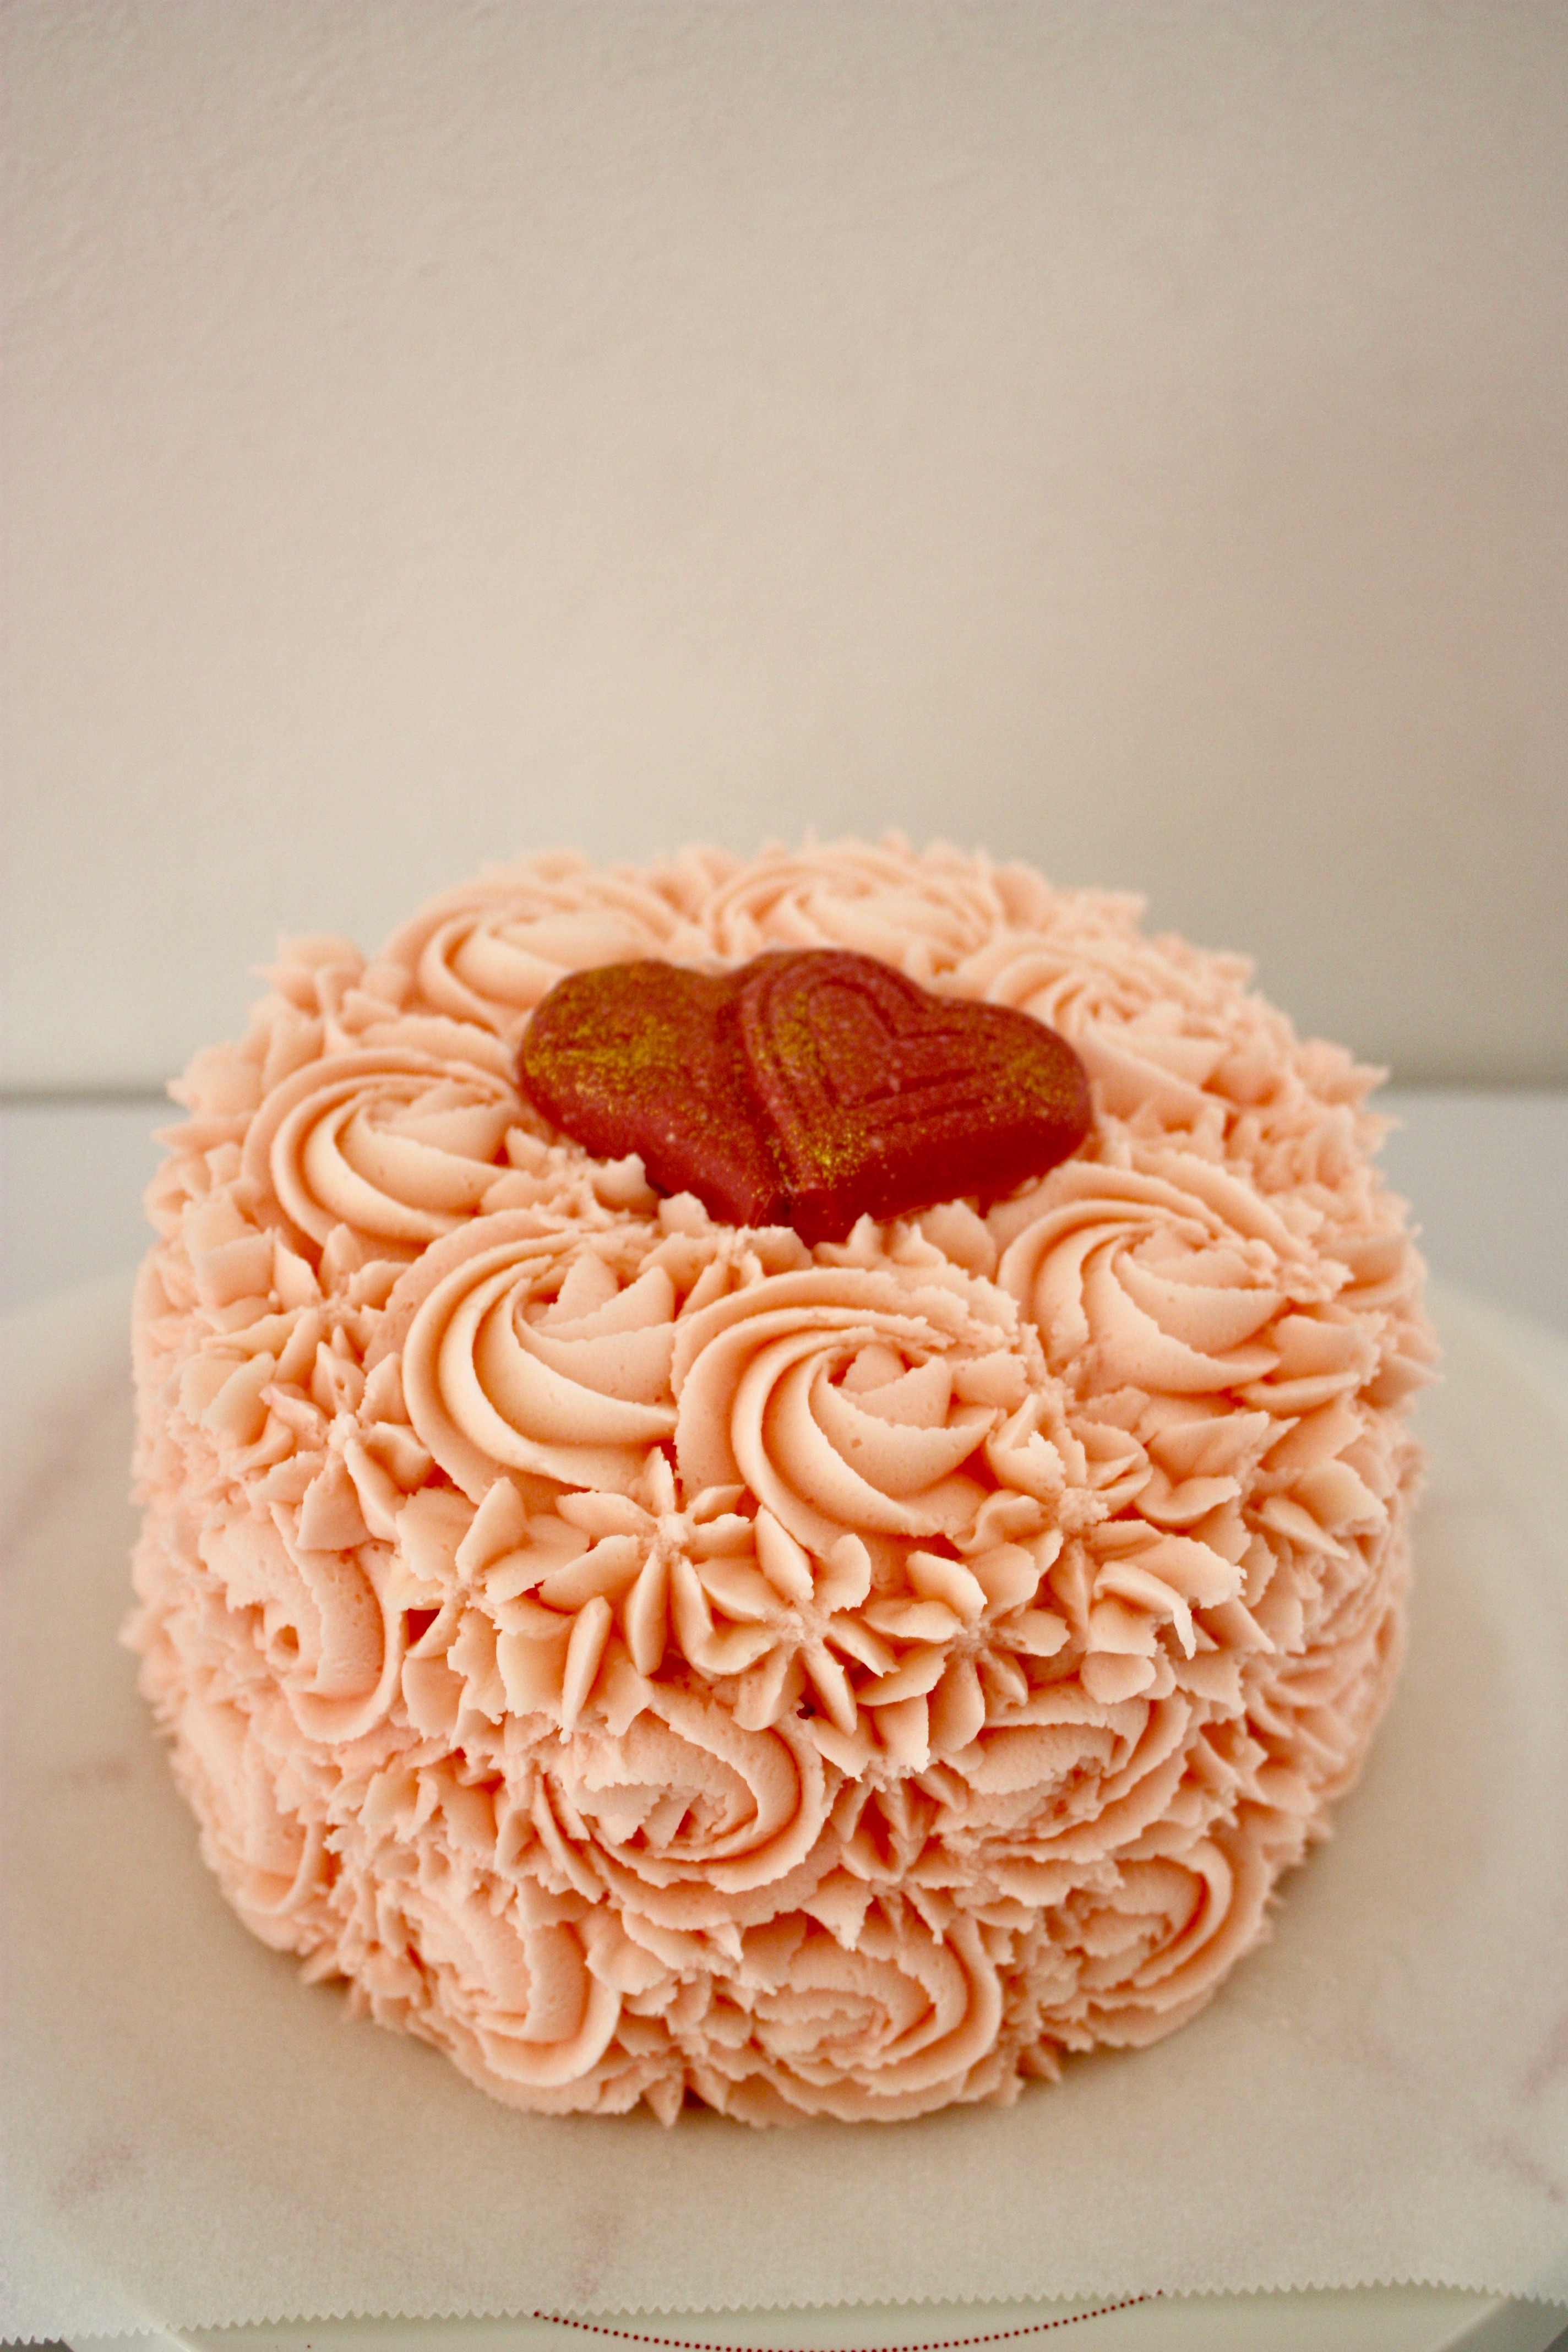 お花畑のような 女の子の誕生日ケーキ パリ風 ママスタイル Blog Madame Figaro Jp フィガロジャポン